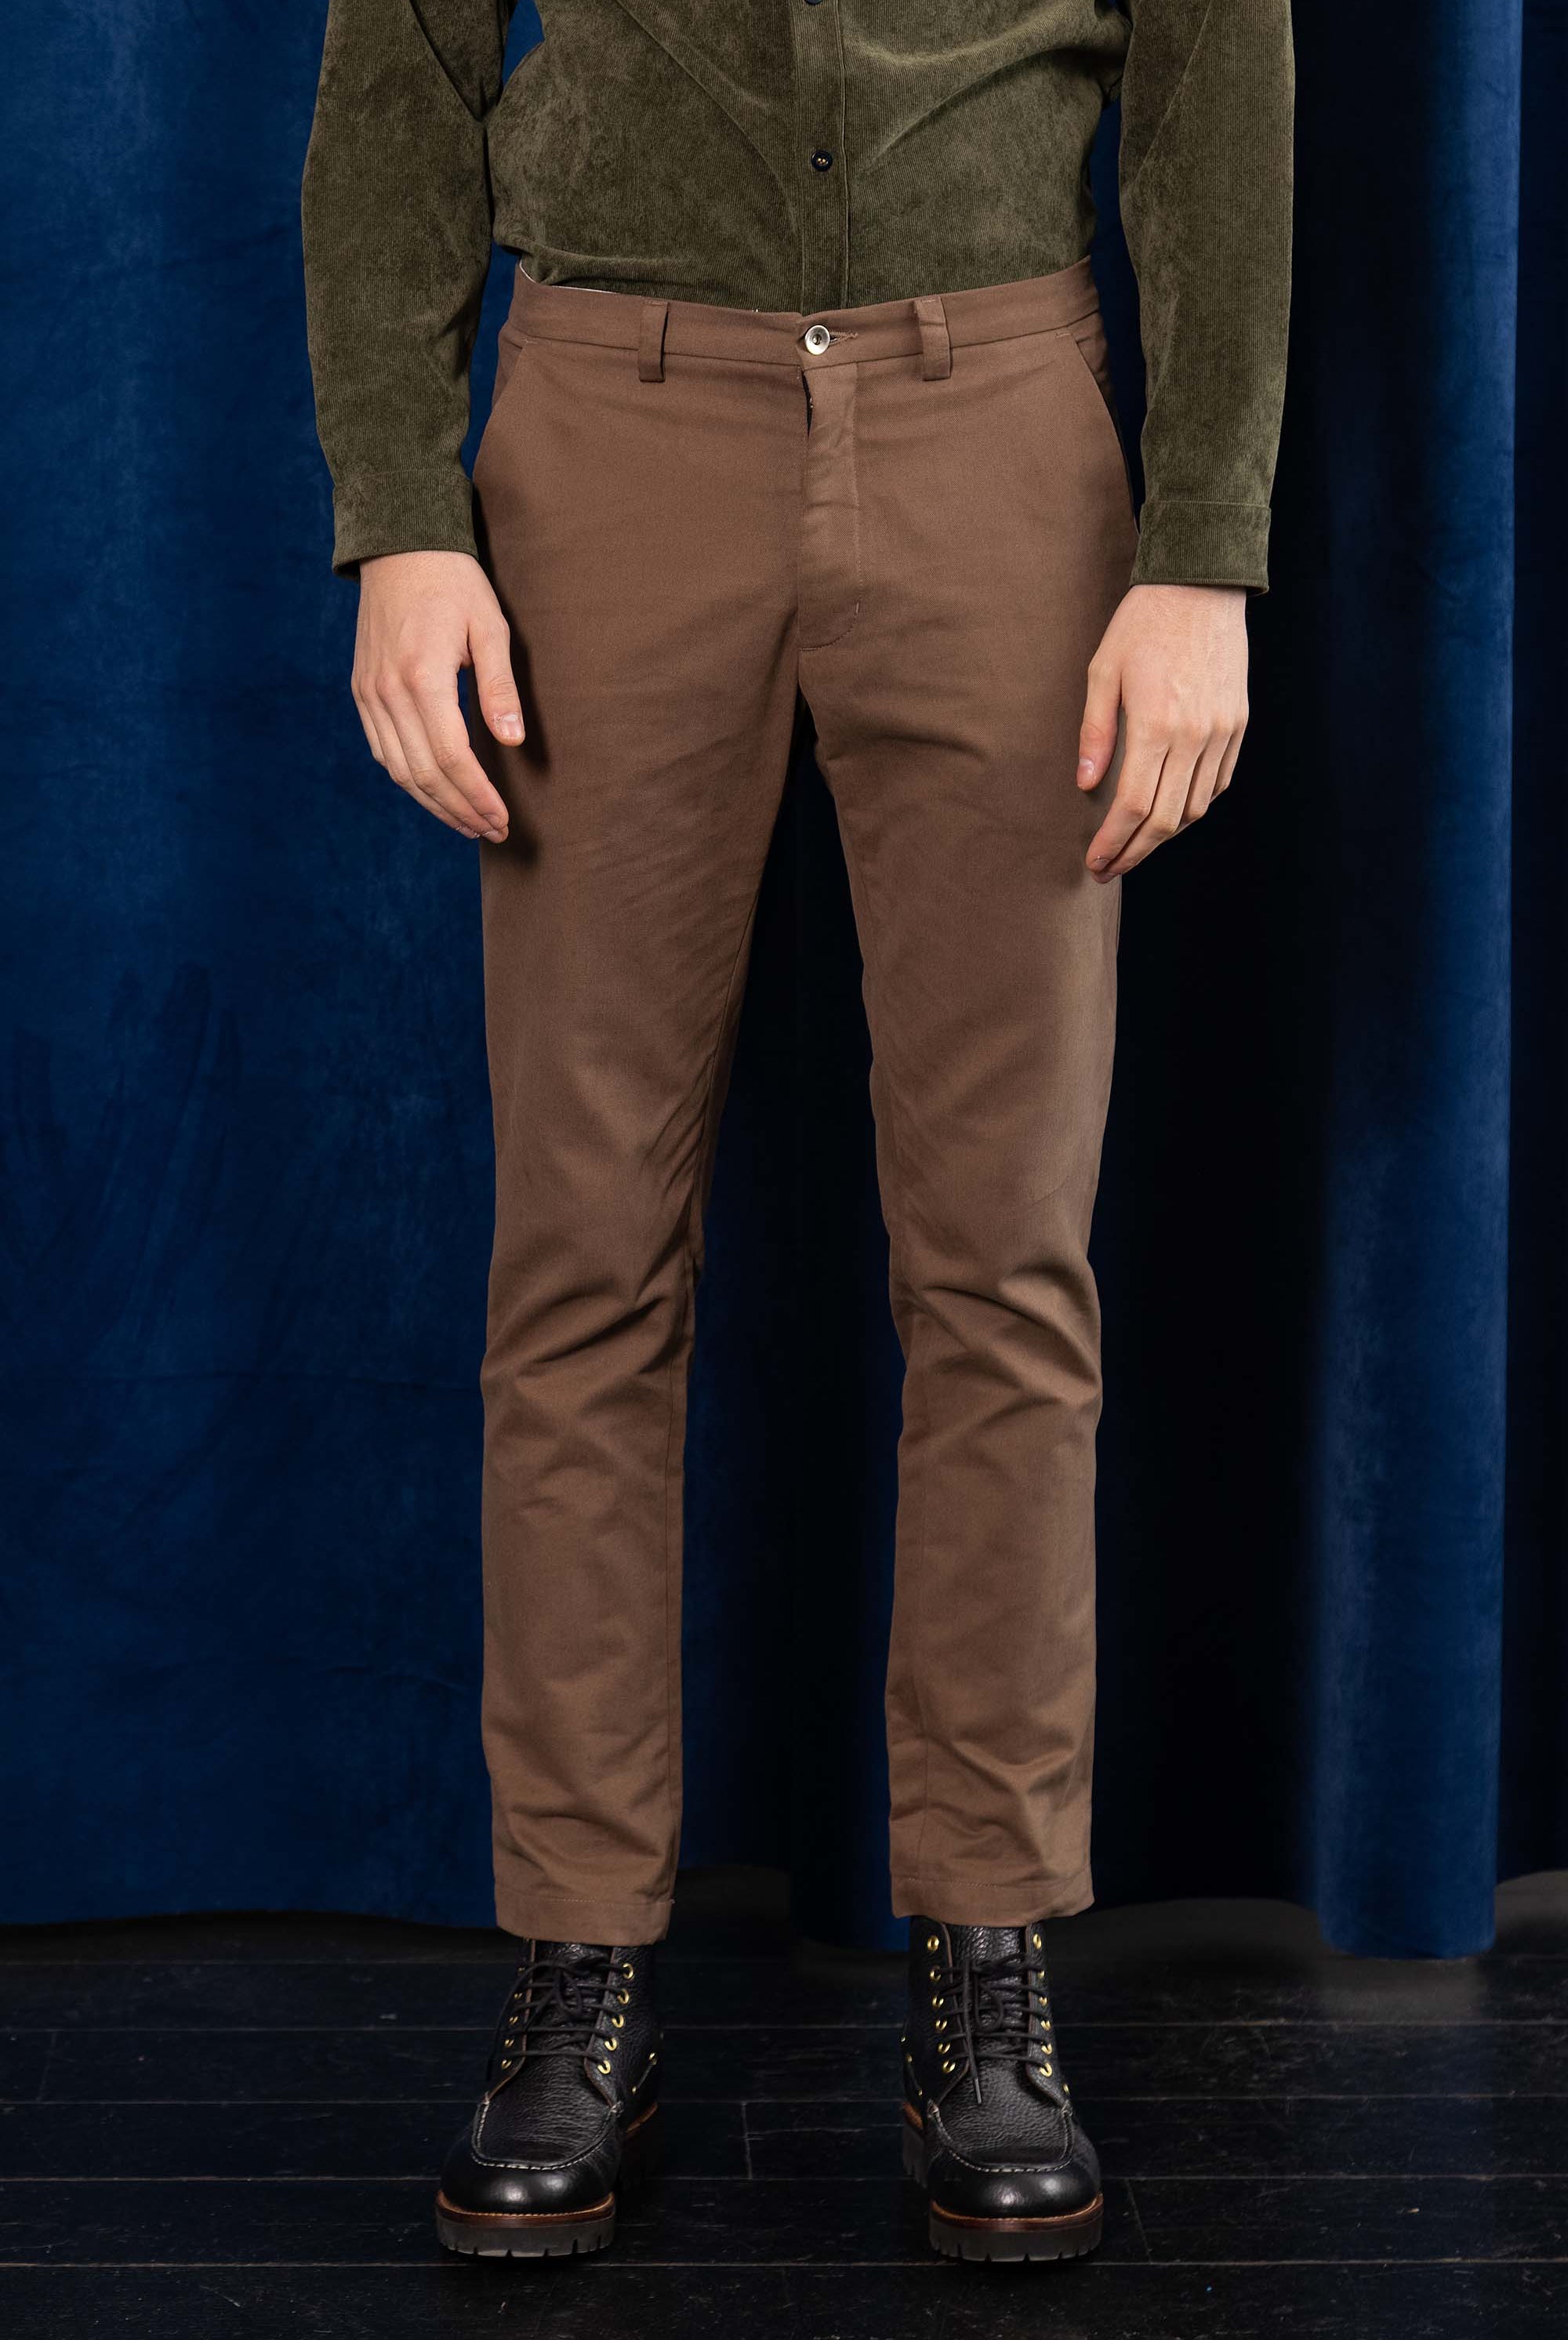 Pantalon General Marron coordonné ou décalé, des plus classiques au plus modernes, en passant par les pantalons colorés